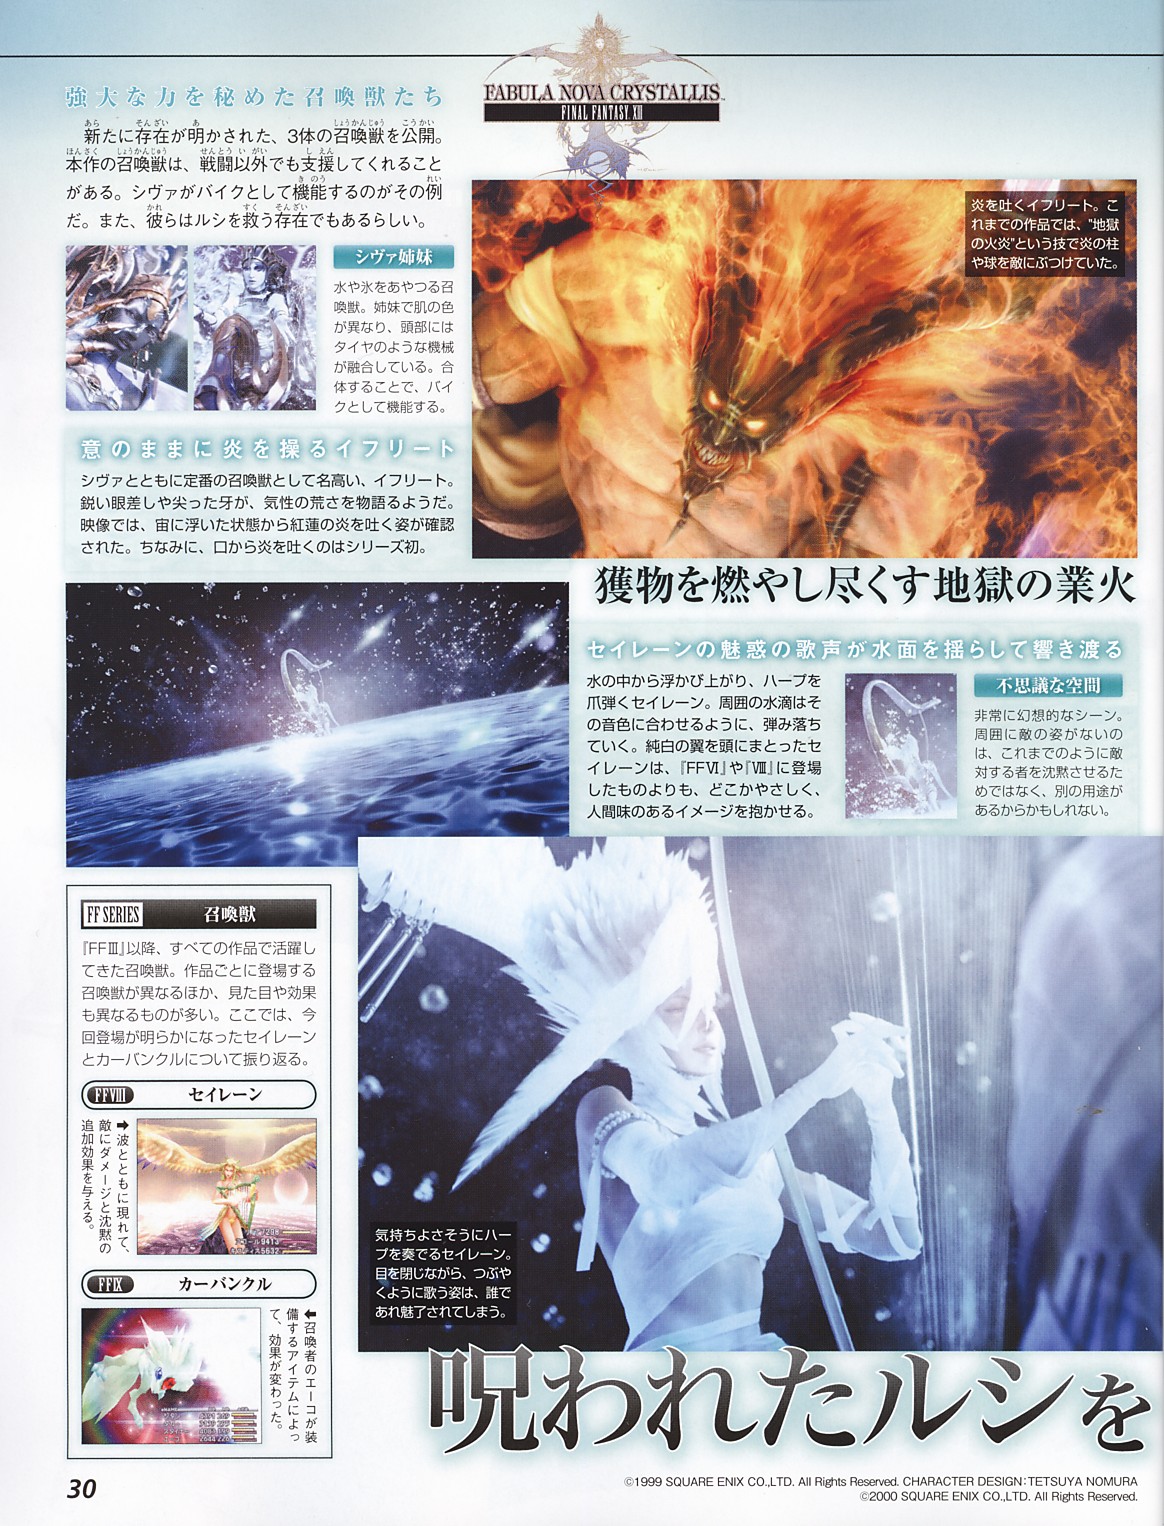 ข้อมูลใหม่เกมส์ Final Fantasy XIII [News]